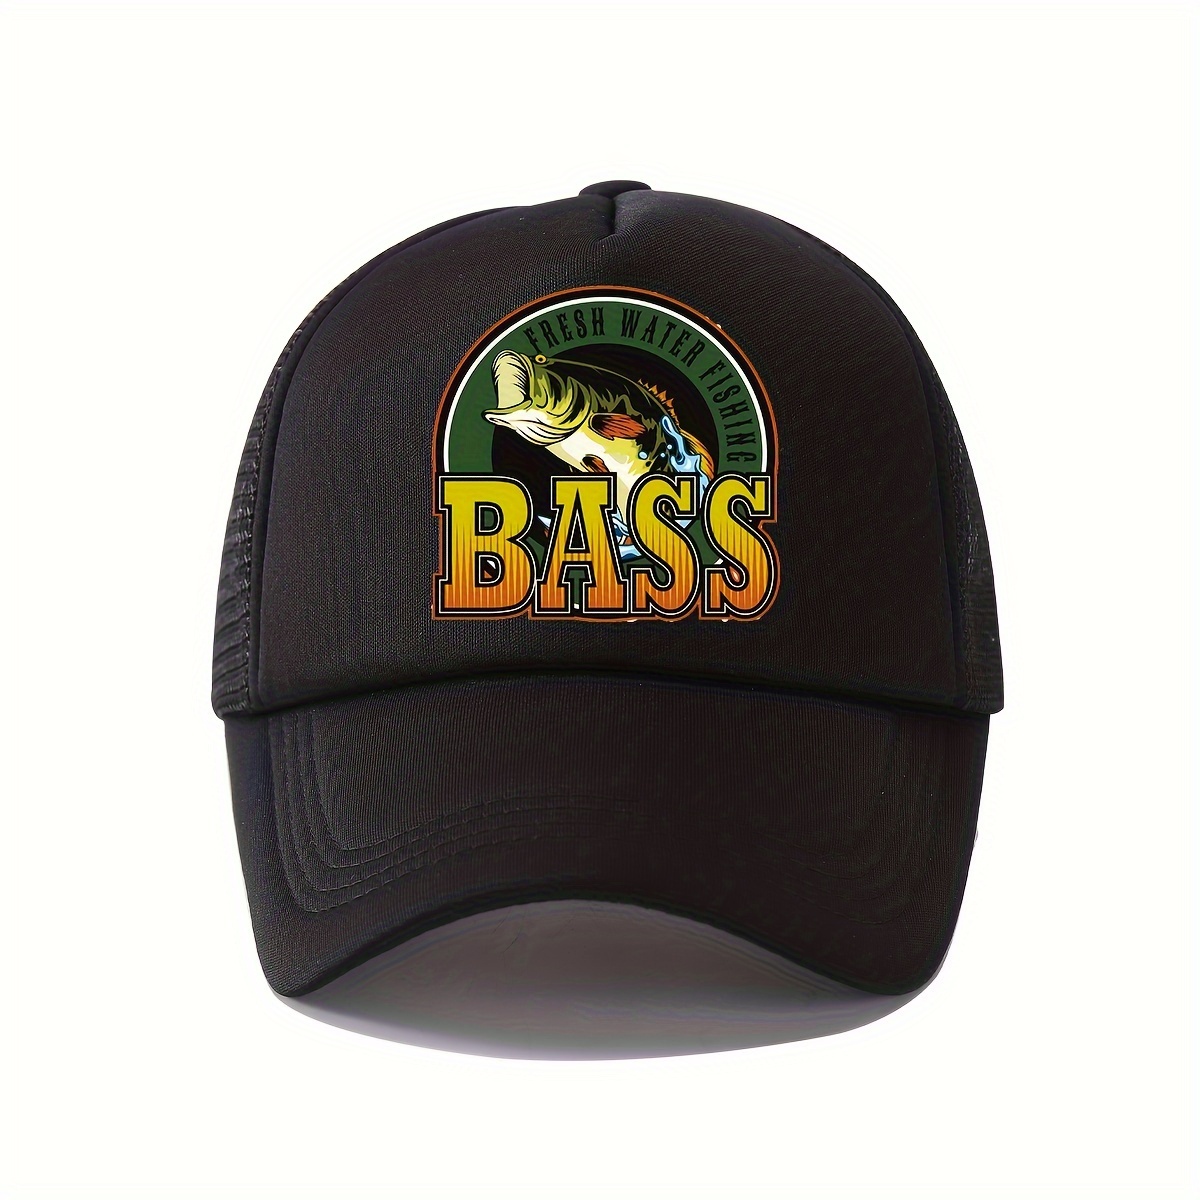 Custom Custom Trucker Hat Baseball Cap Addicted to Fishing Guppies Fish  Animal Dad Hats for Men & Women